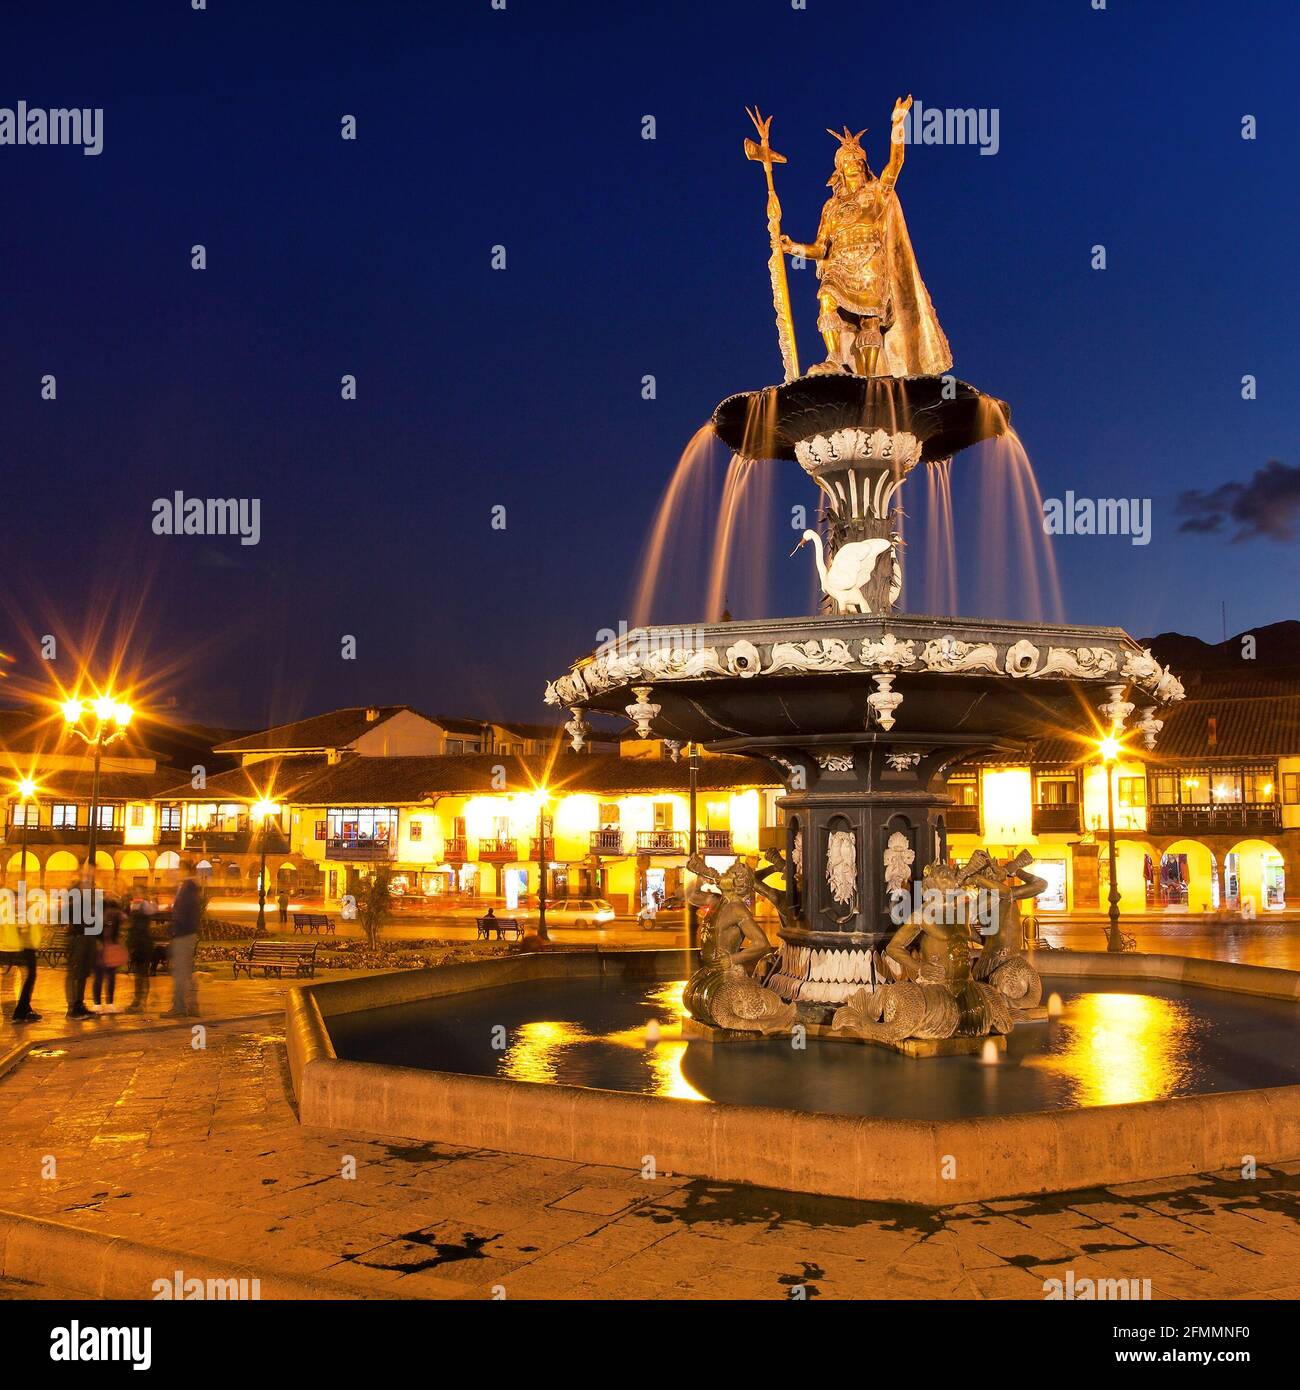 Statue de l'Inca Pachacutec sur la fontaine de la Plaza de Armas, vue de nuit, Cusco ou Cuzco ville, Pérou Banque D'Images